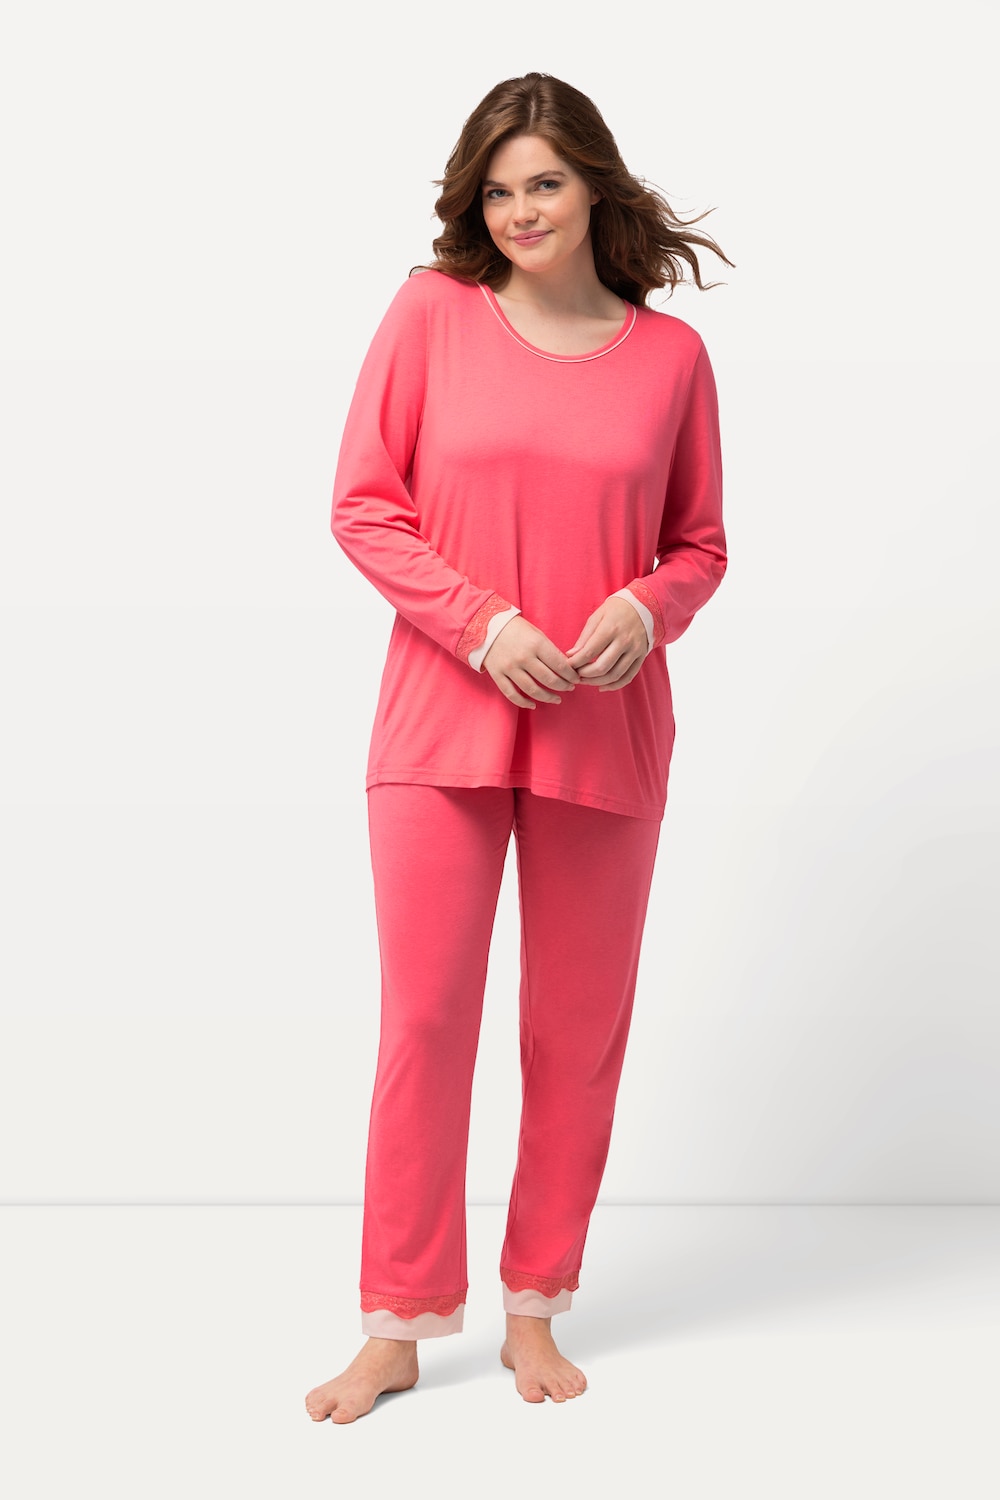 Grote Maten Pyjama, Dames, roze, Maat: 54/56, Katoen/Synthetische vezels, Ulla Popken